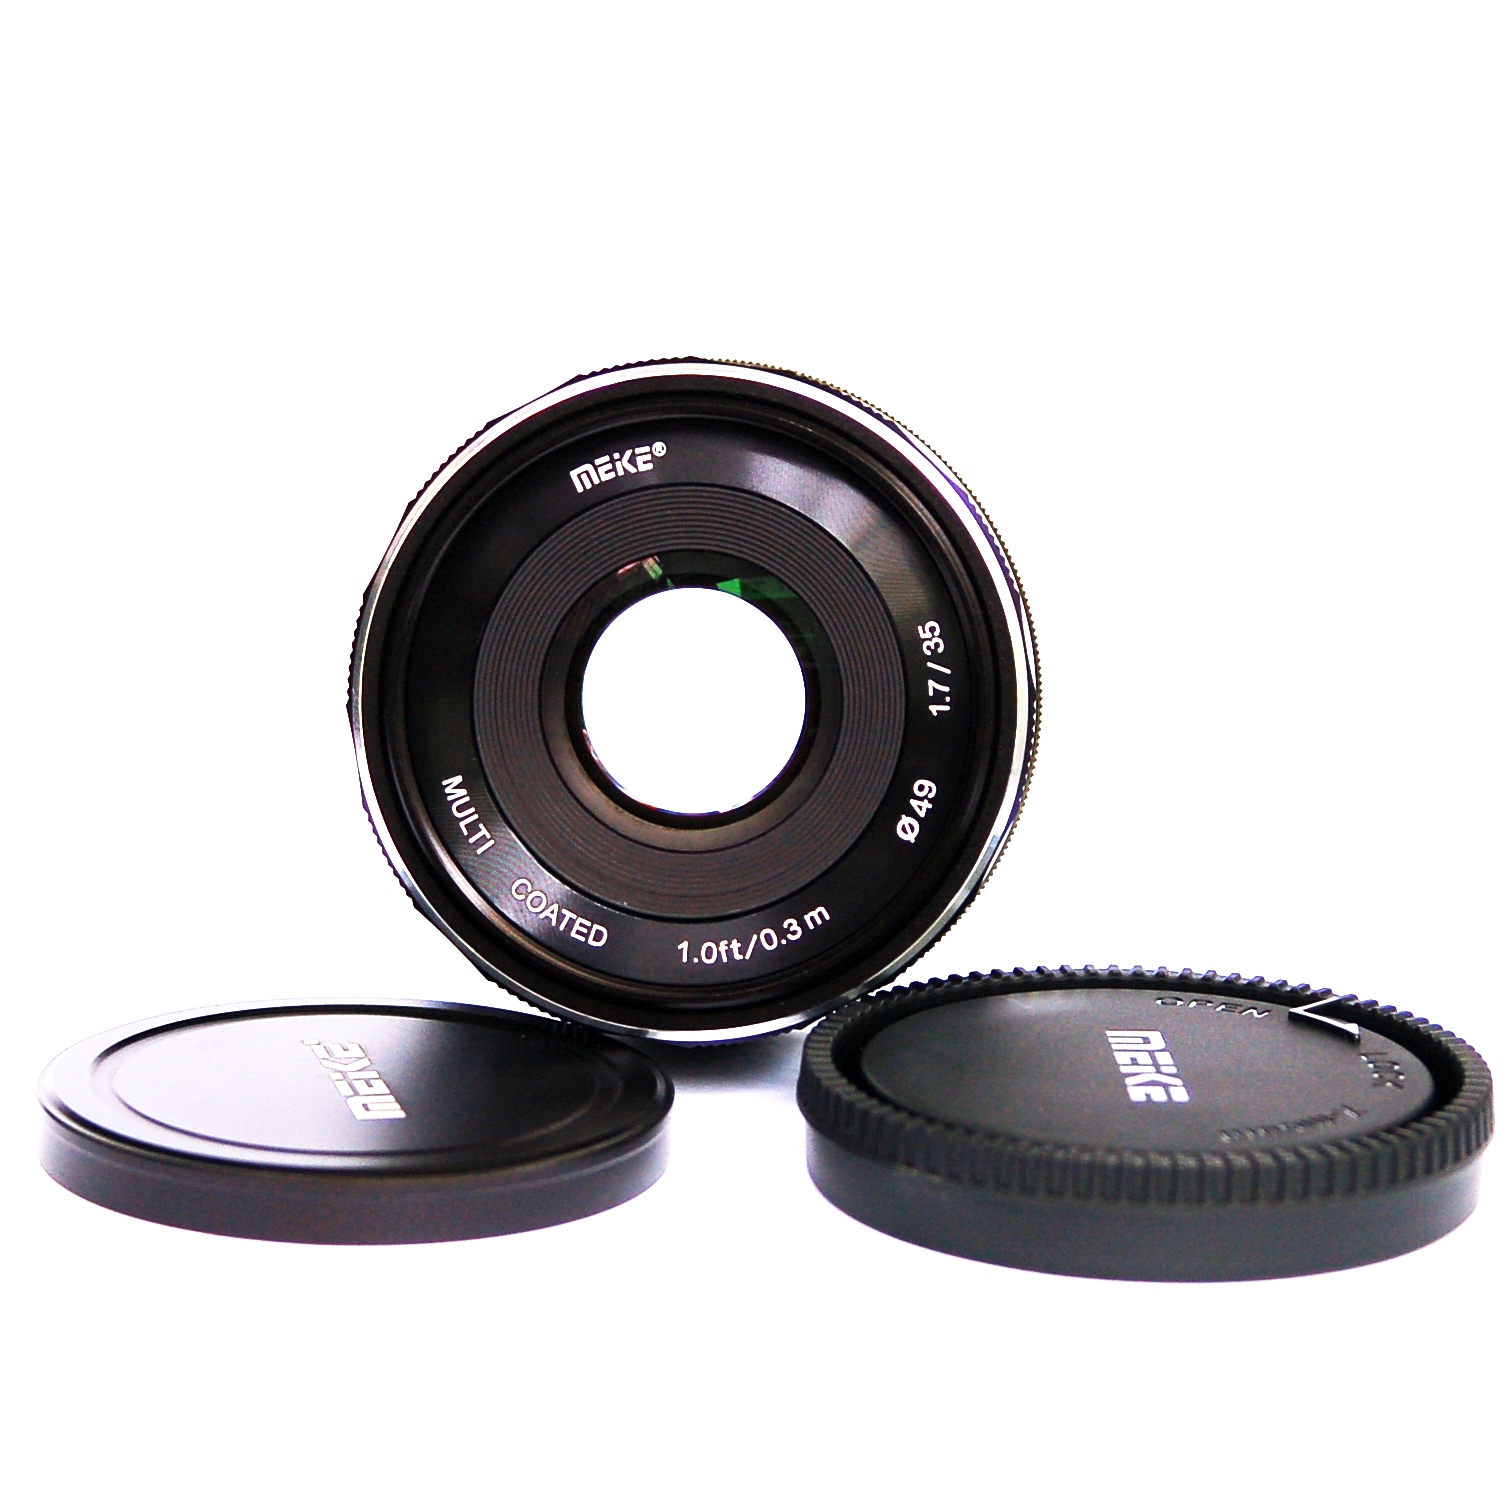 Ống kính Meike 35mm F1.7 cho máy ảnh Fuji manual focus- Hàng nhập khẩu